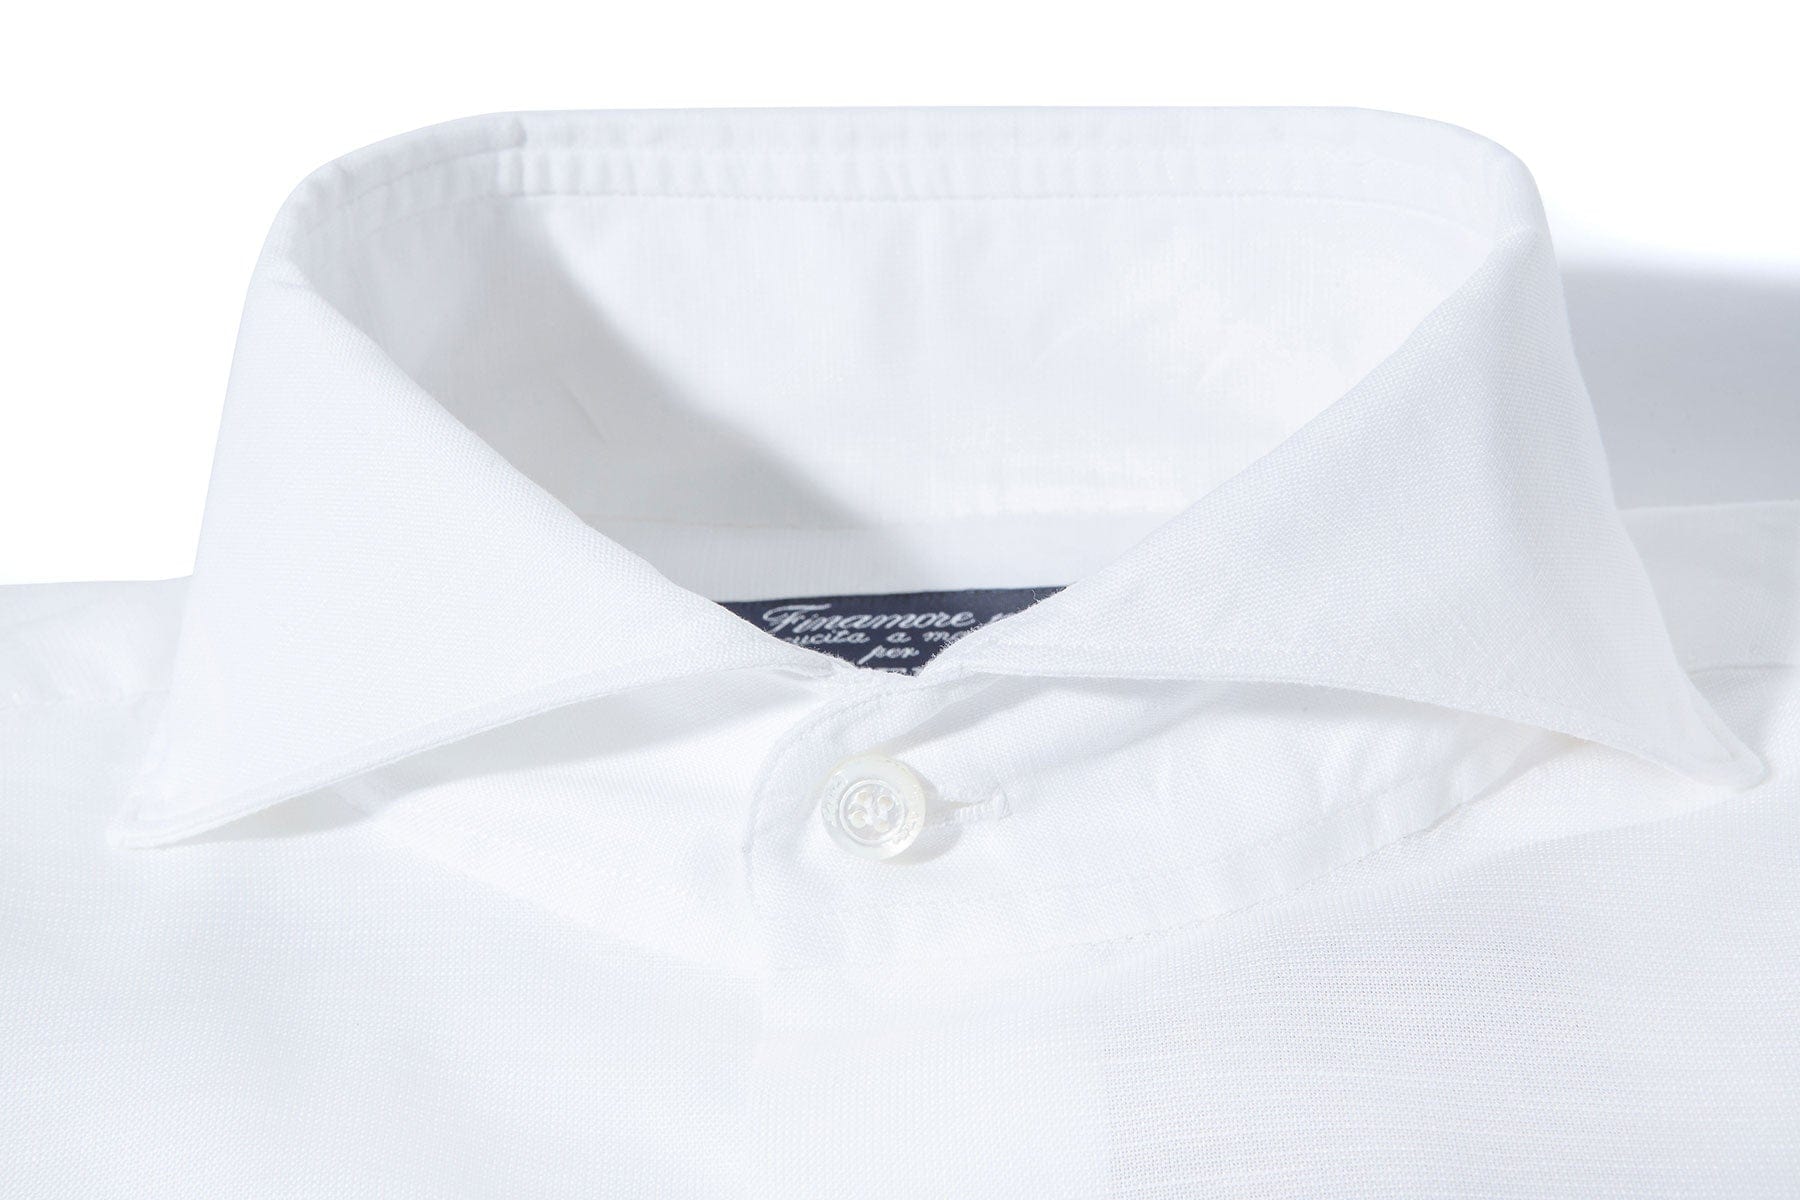 Andorra Carlo Riva Cotton Linen Shirt In White - AXEL'S